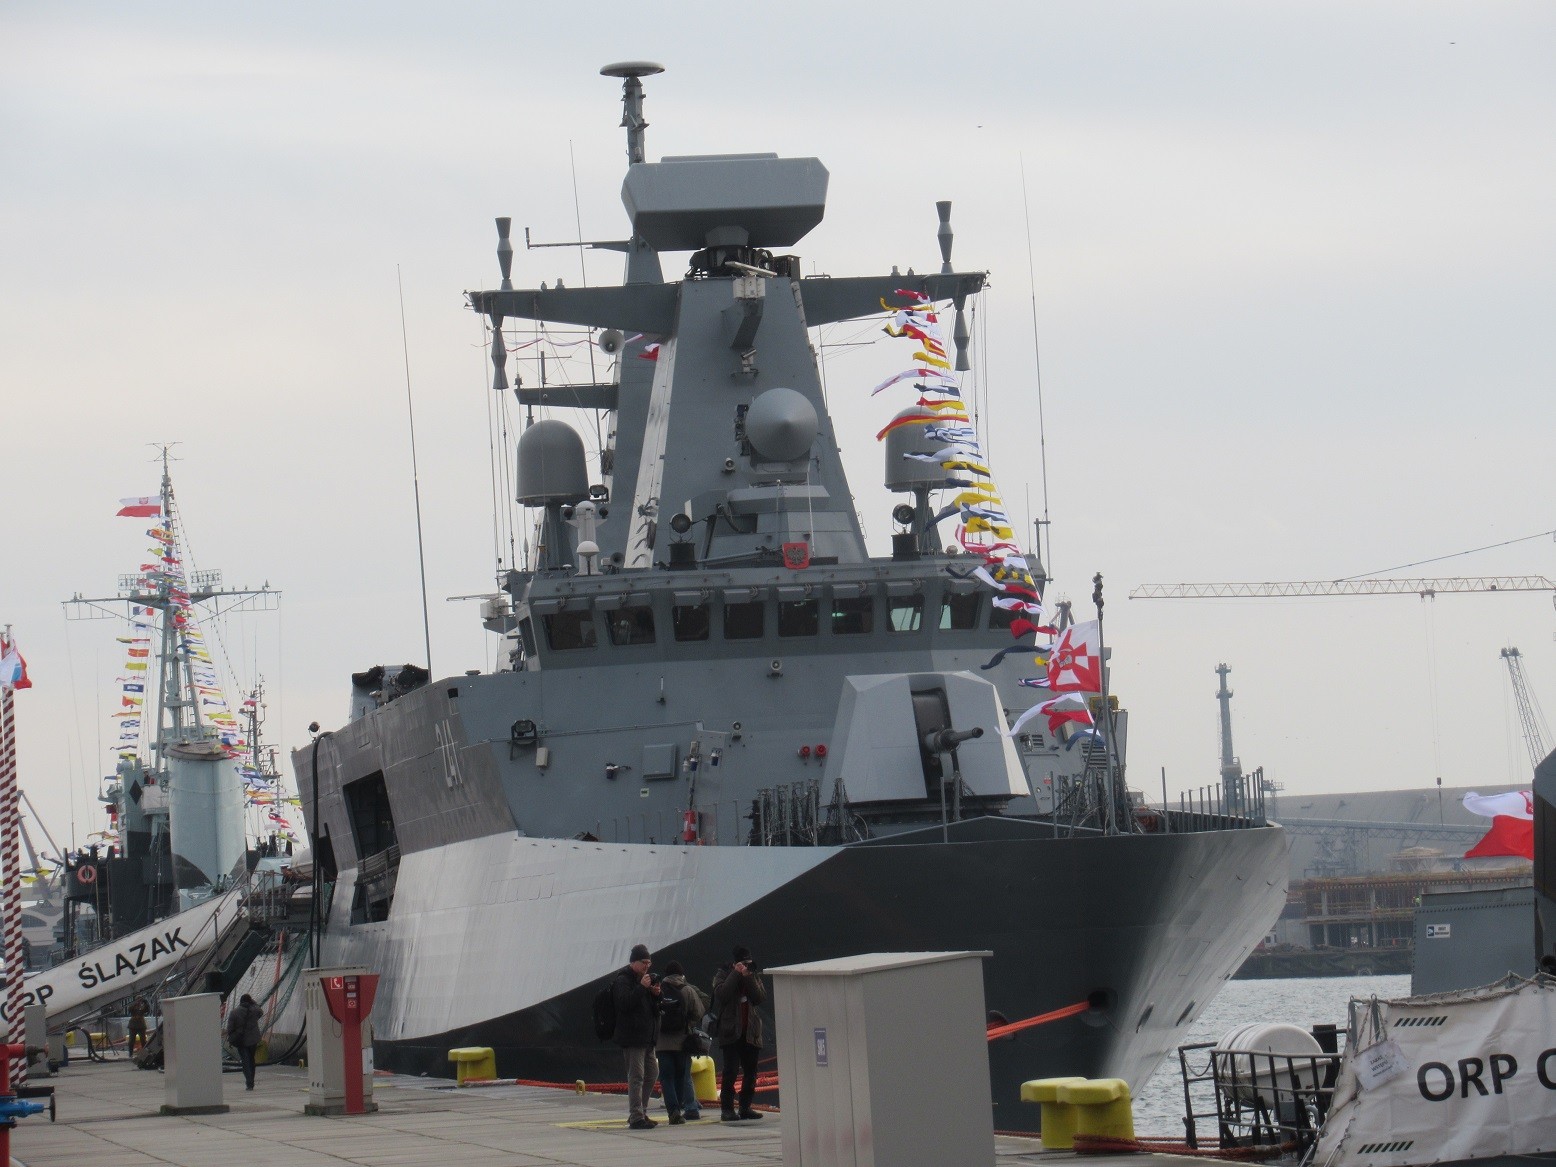 Prototypowy okręt ORP „Ślązak” jest symbolem nieudanego programu budowy siedmiu korwet Gawron. Fot. M.Dura